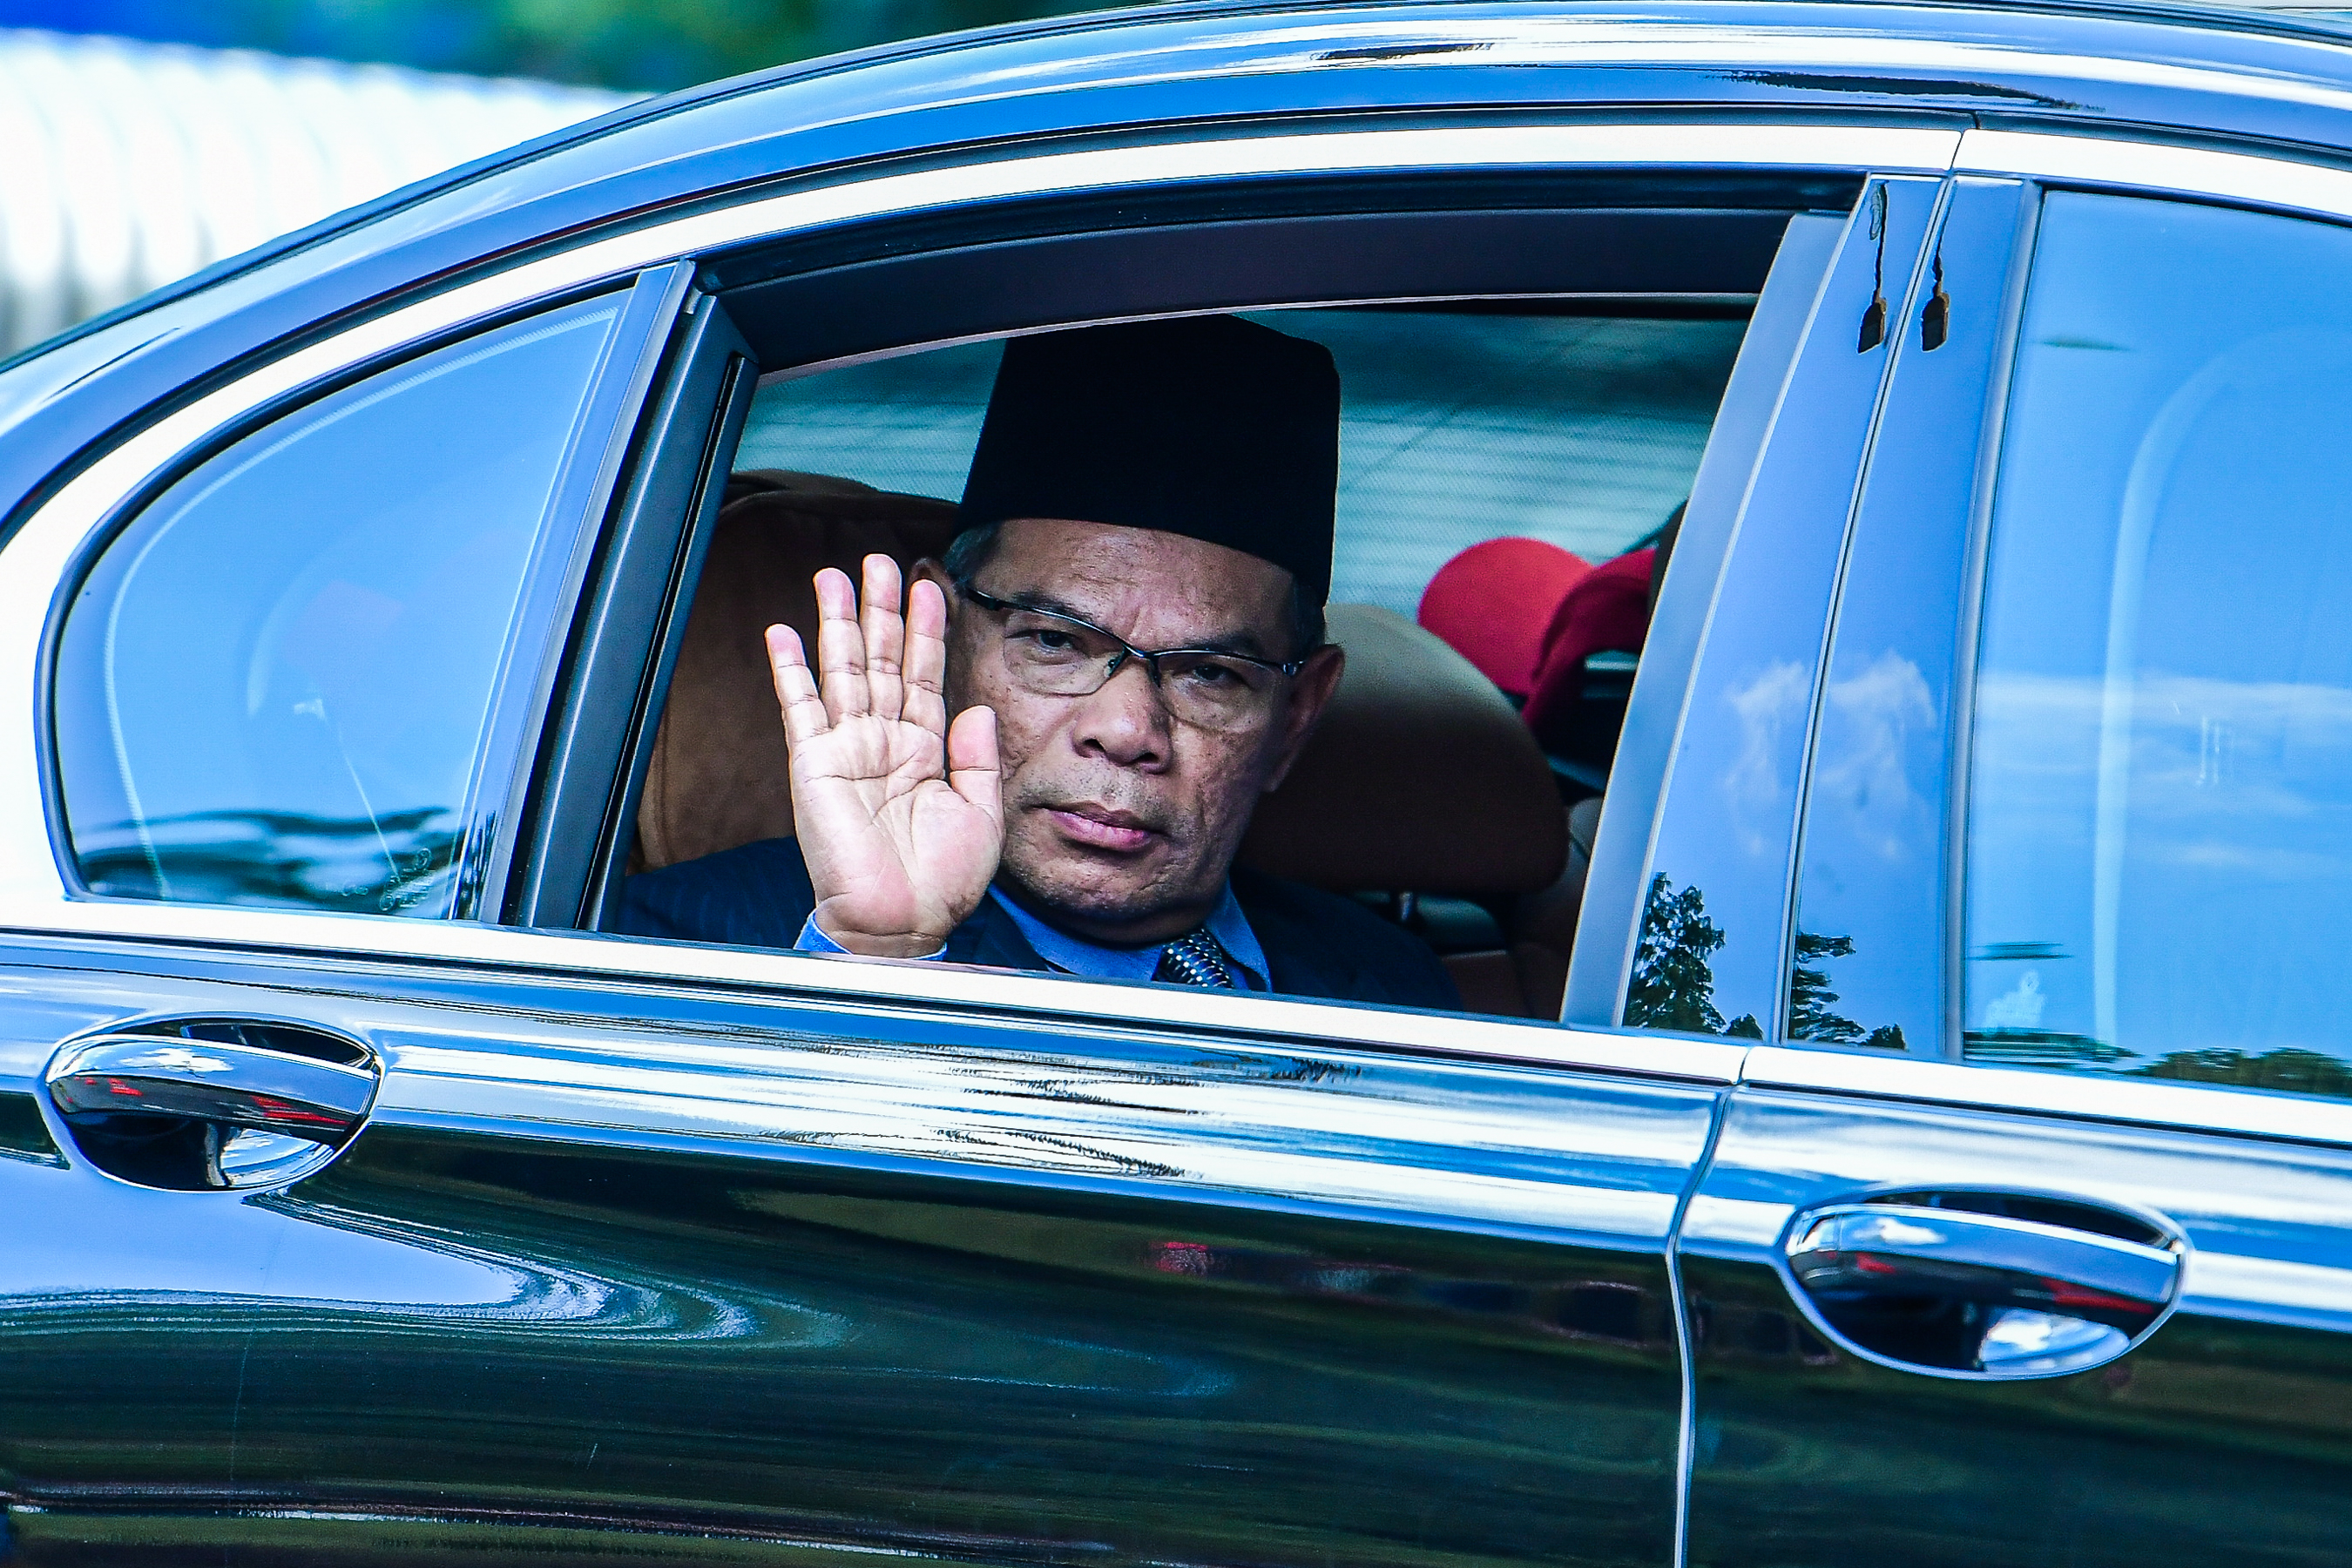 Home Minister Datuk Seri Saifuddin Nasution Ismail (Photo by Zahid Izzani Mohd Said/The Edge)